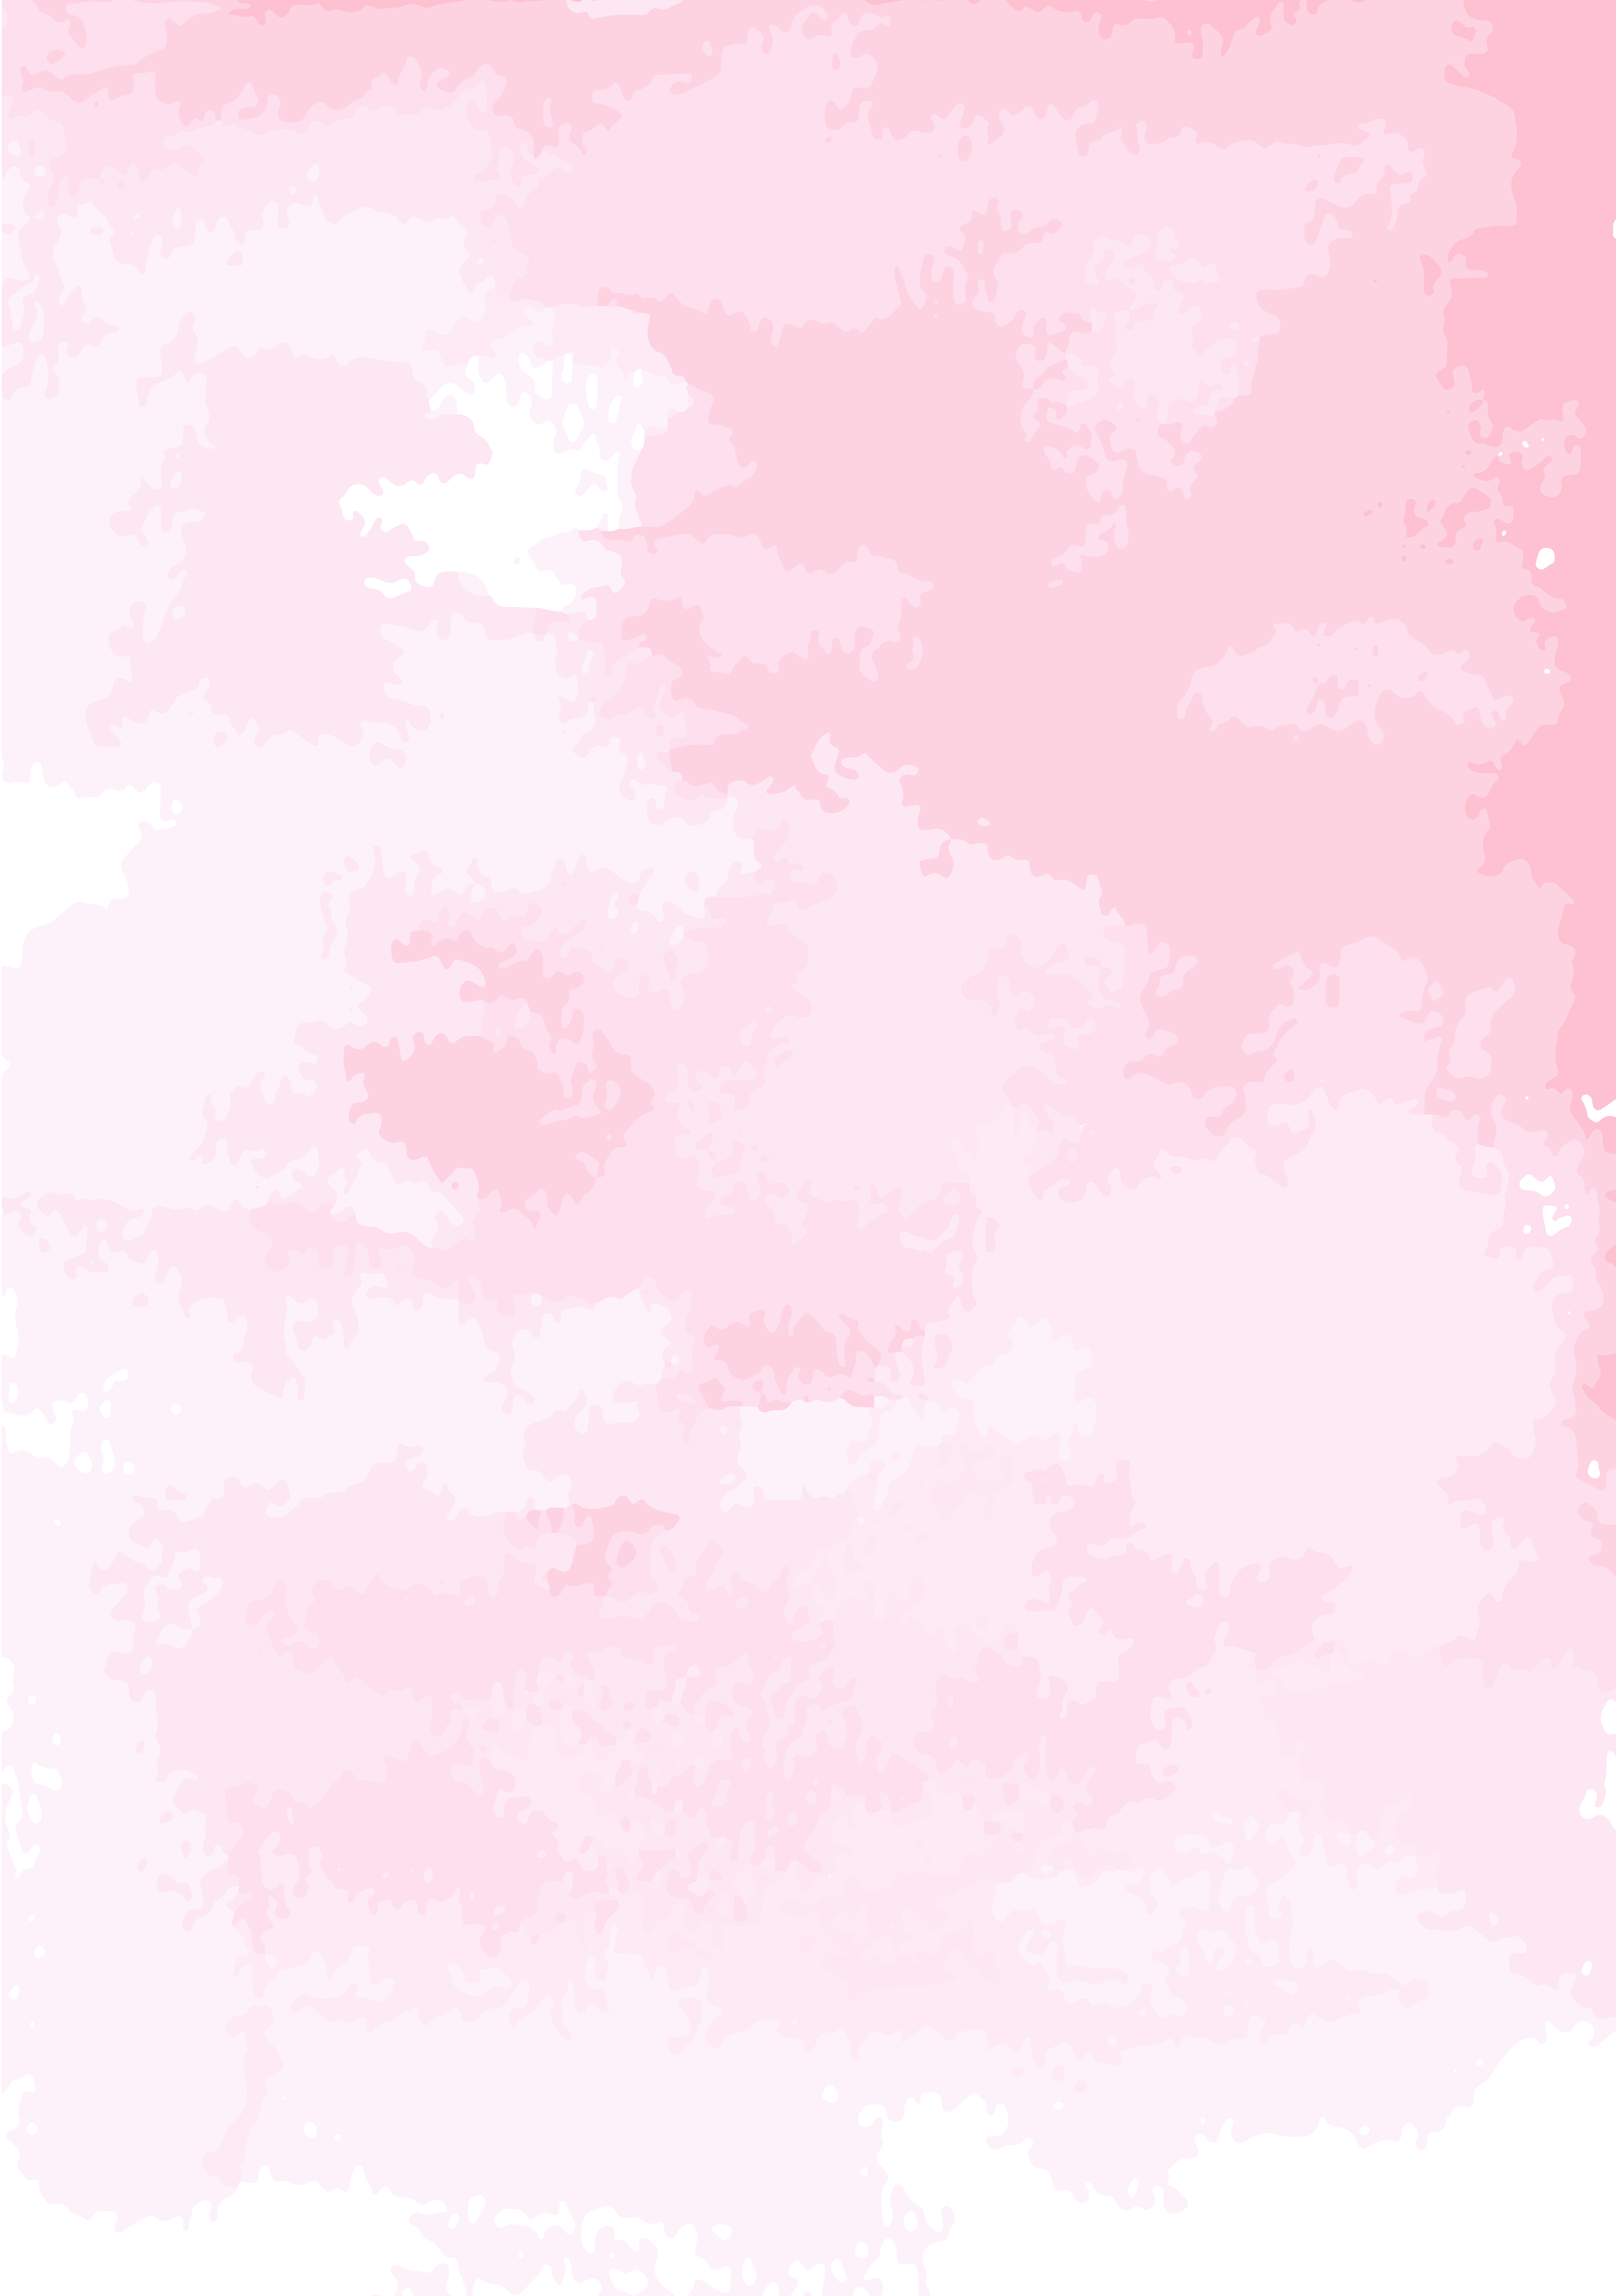 24+] Pink Watercolor Wallpapers - WallpaperSafari